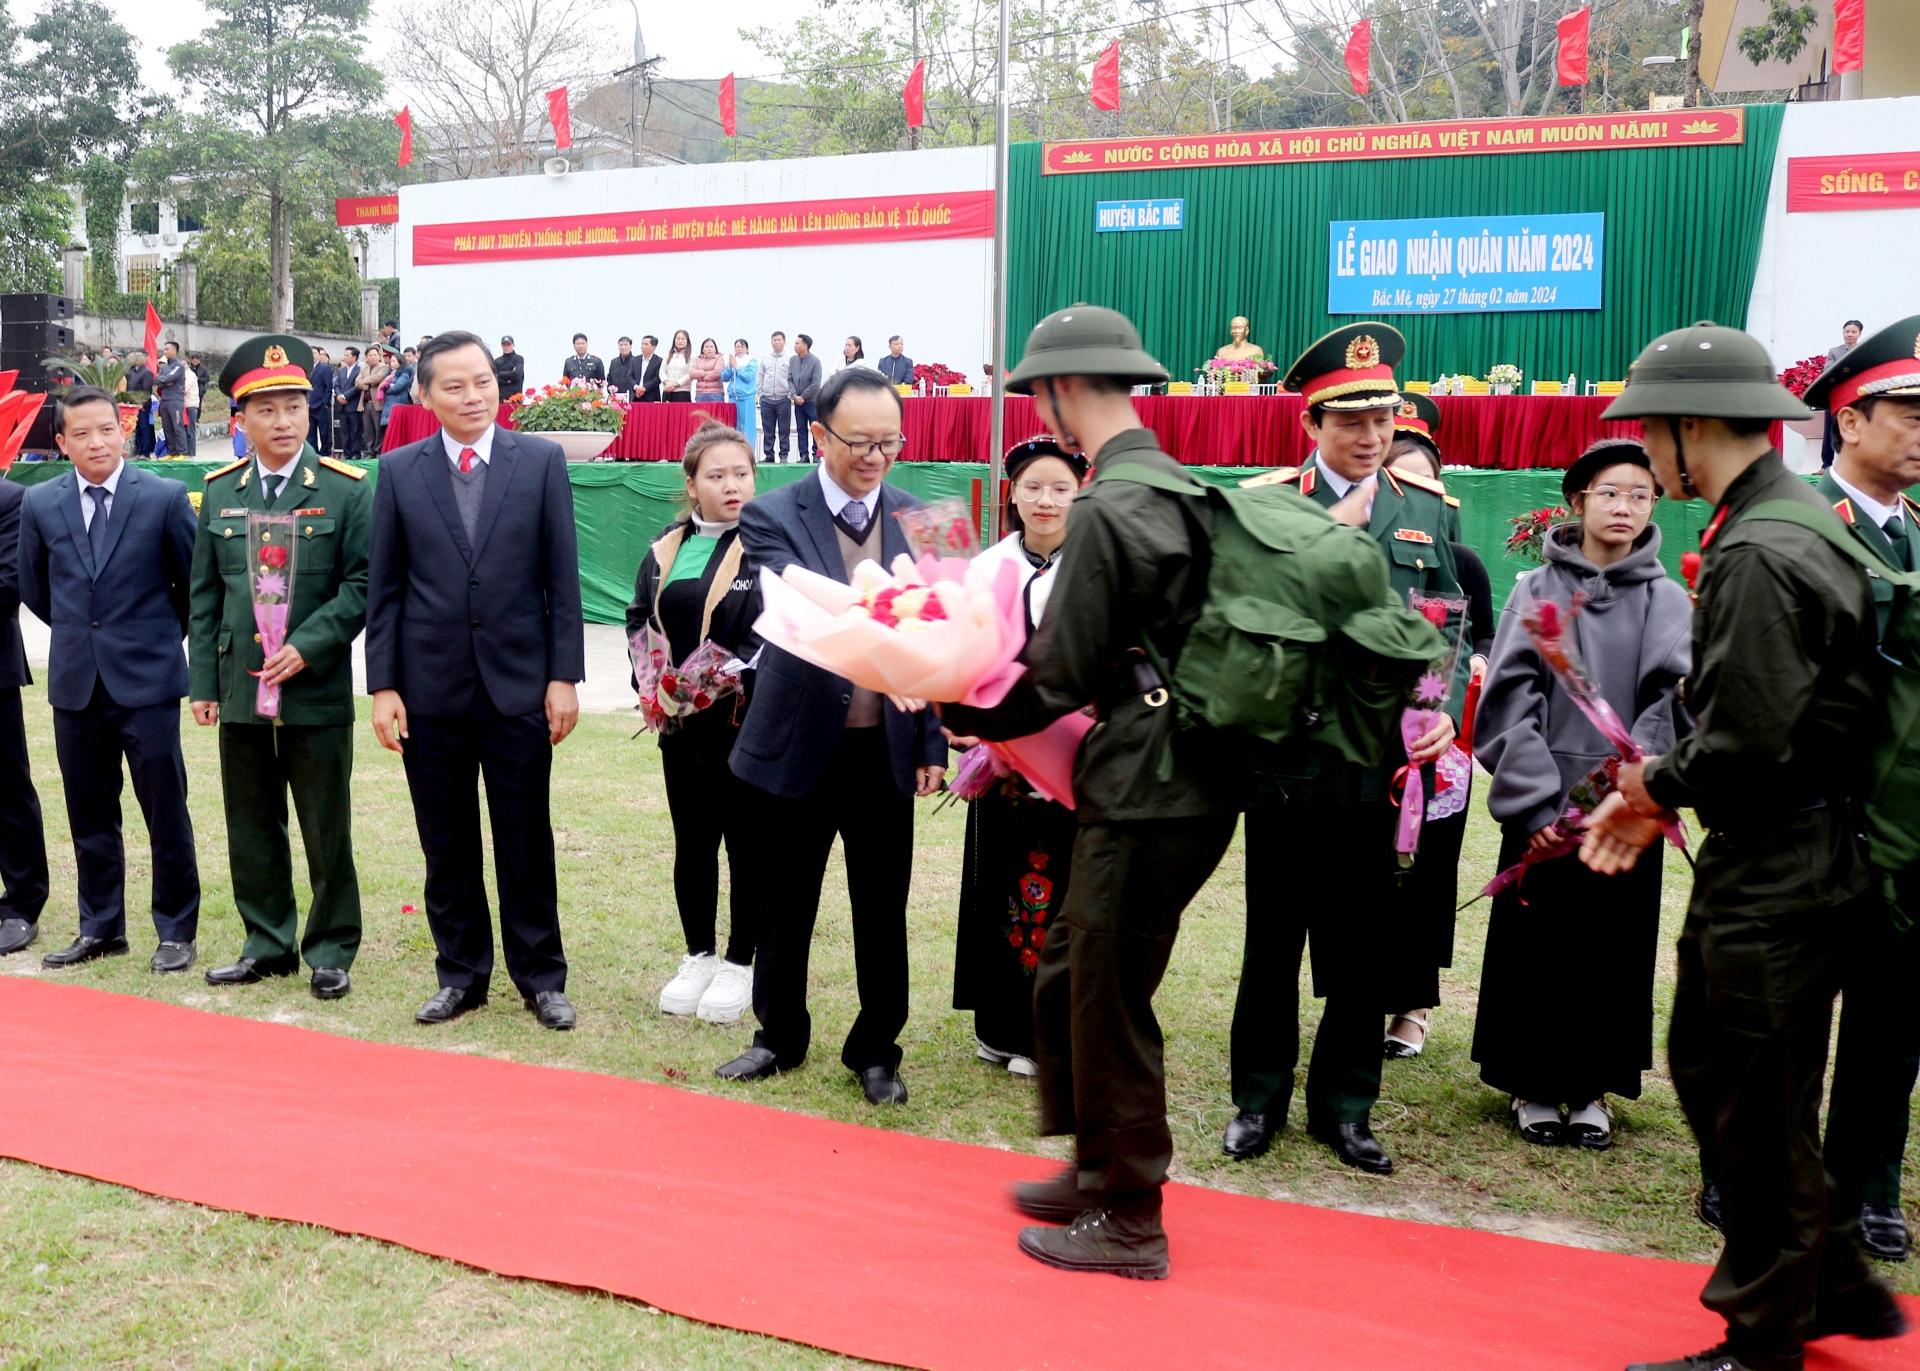 Phó Bí thư Thường trực Tỉnh ủy, Chủ tịch HĐND tỉnh Thào Hồng Sơn, lãnh đạo Quân khu 2 và lãnh đạo huyện Bắc Mê tặng hoa chúc mừng, động viên các tân binh lên đường nhập ngũ.